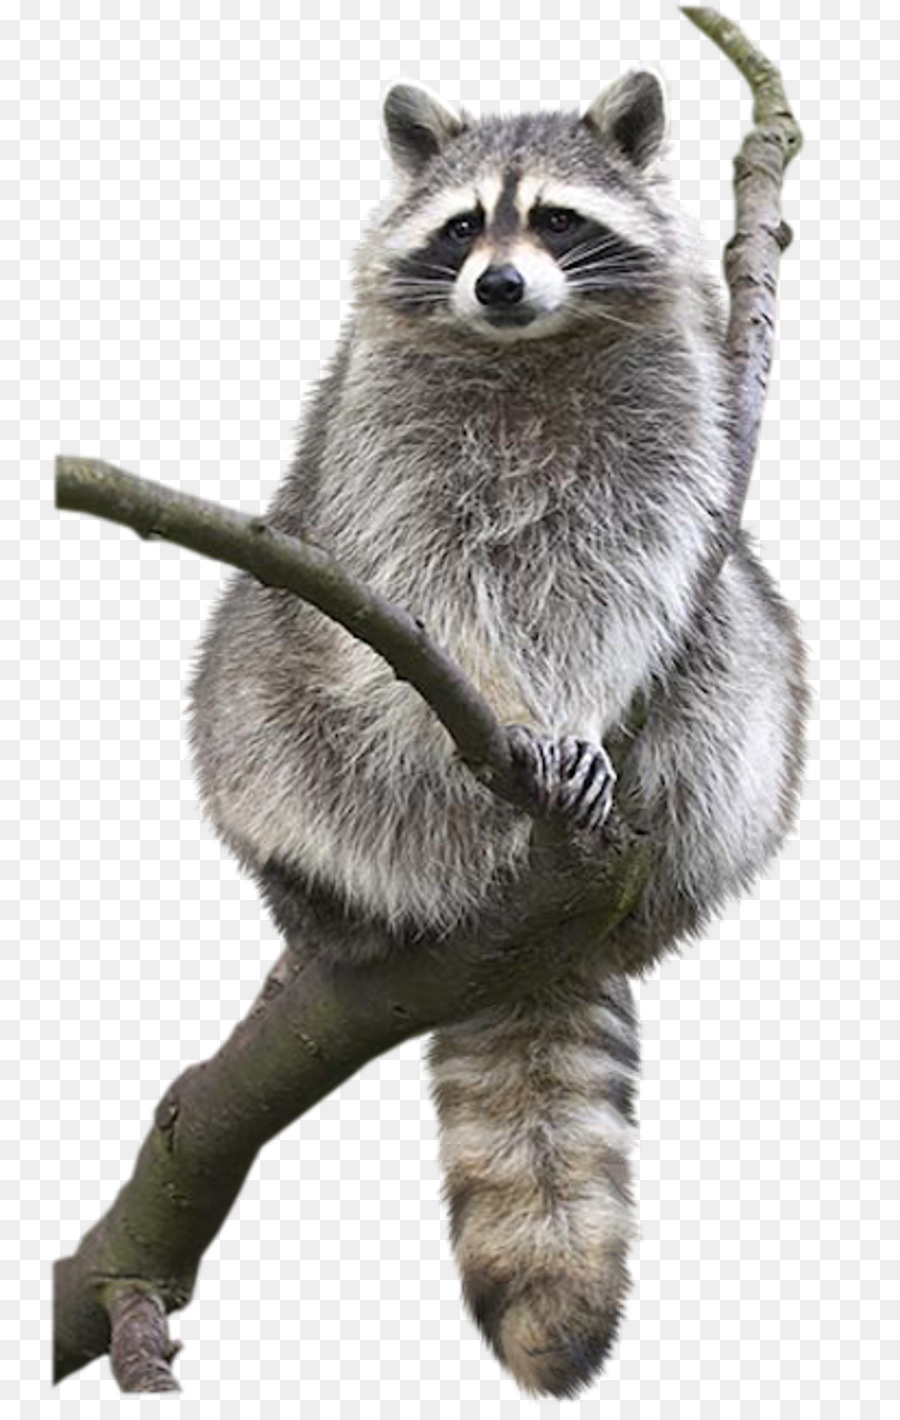 Raccoon Animal Drawing Bat Bird - raccoon png download - 800*1412 - Free Transparent Raccoon png Download.